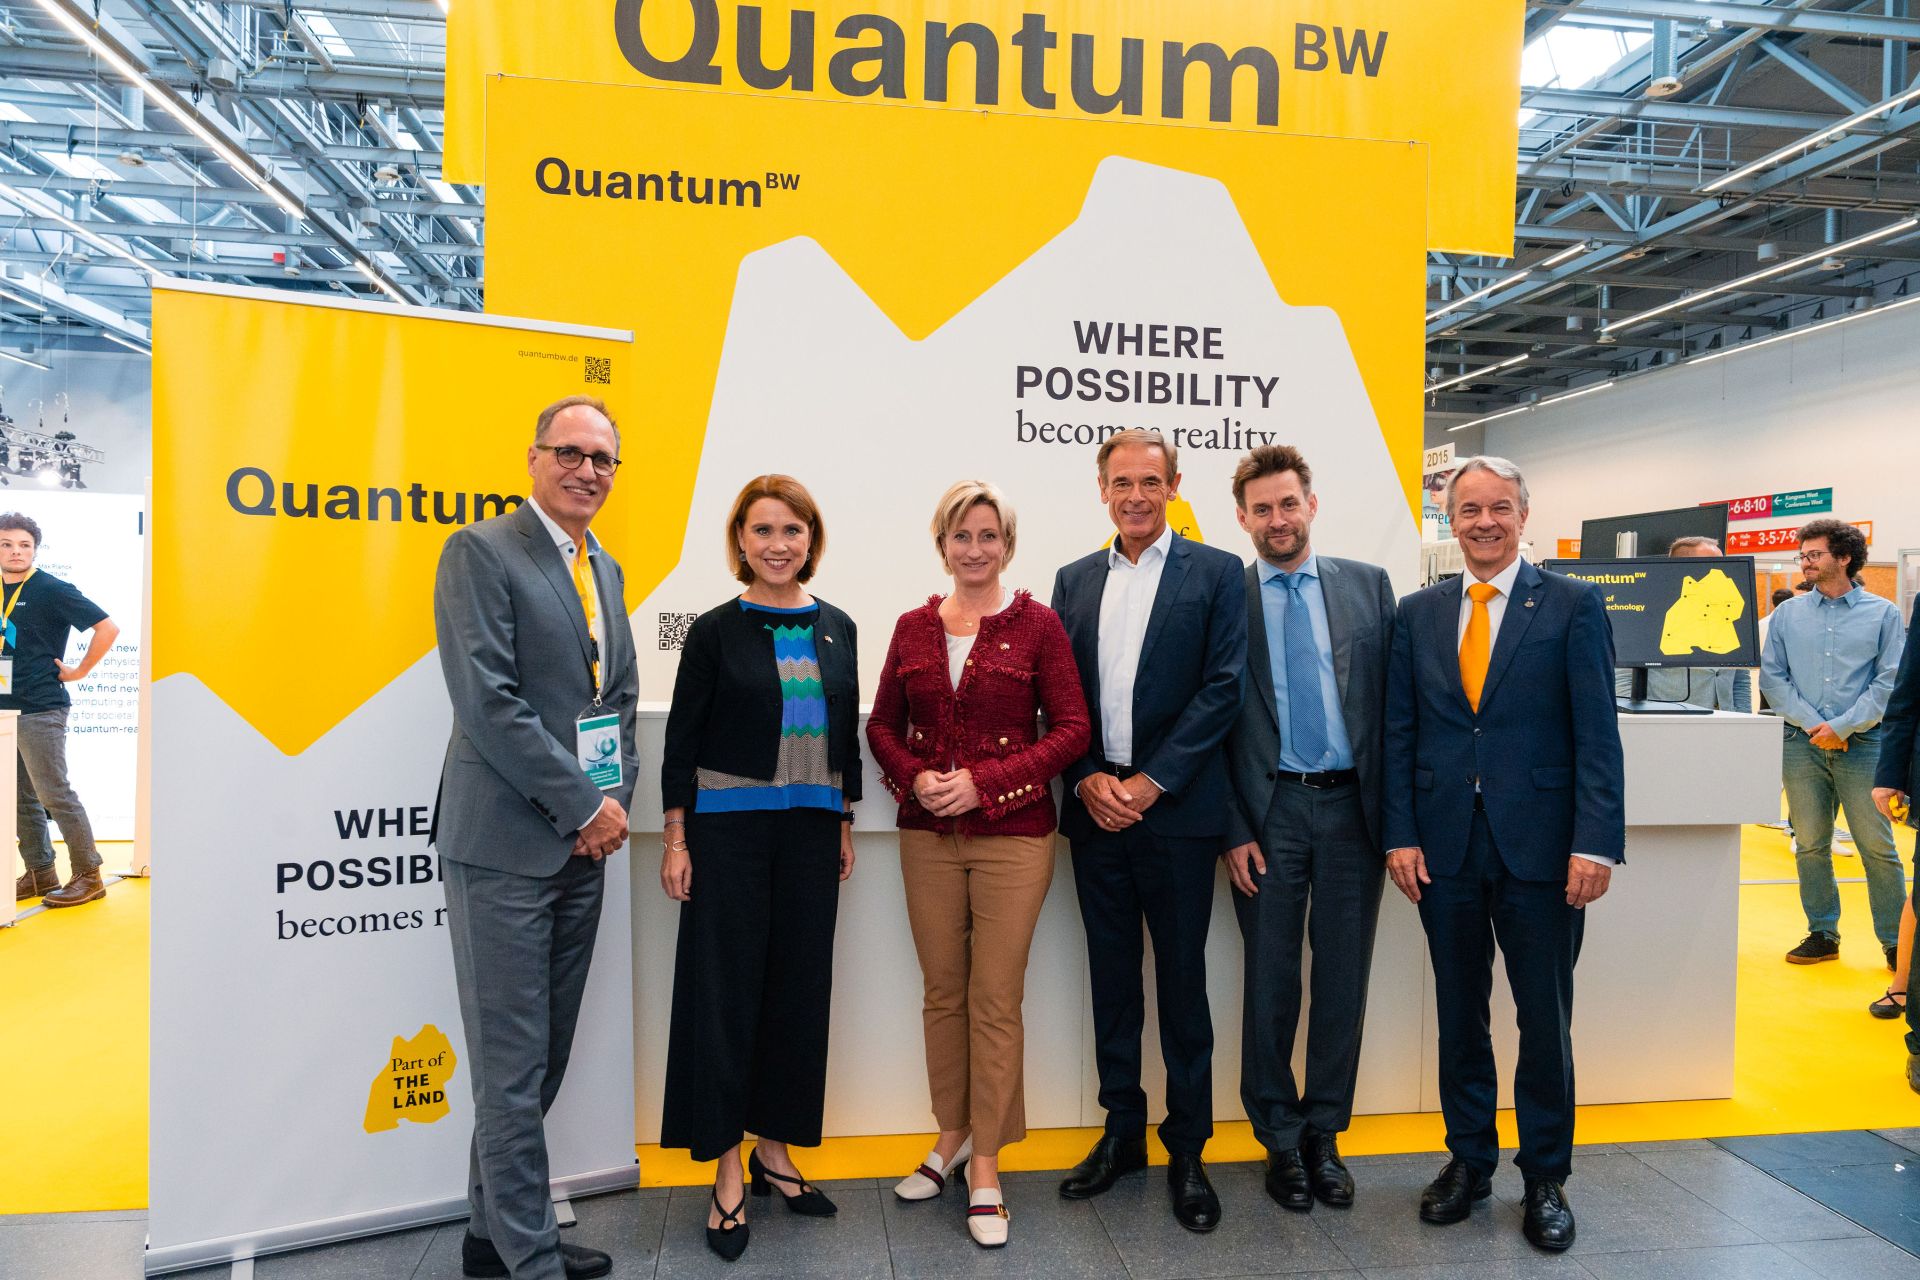 Die Sprecher von Quantum<sup>BW</sup> mit den Ministerinnen Olschowski und Hoffmeister-Kraut sowie mit Rüdiger Quay und dem 